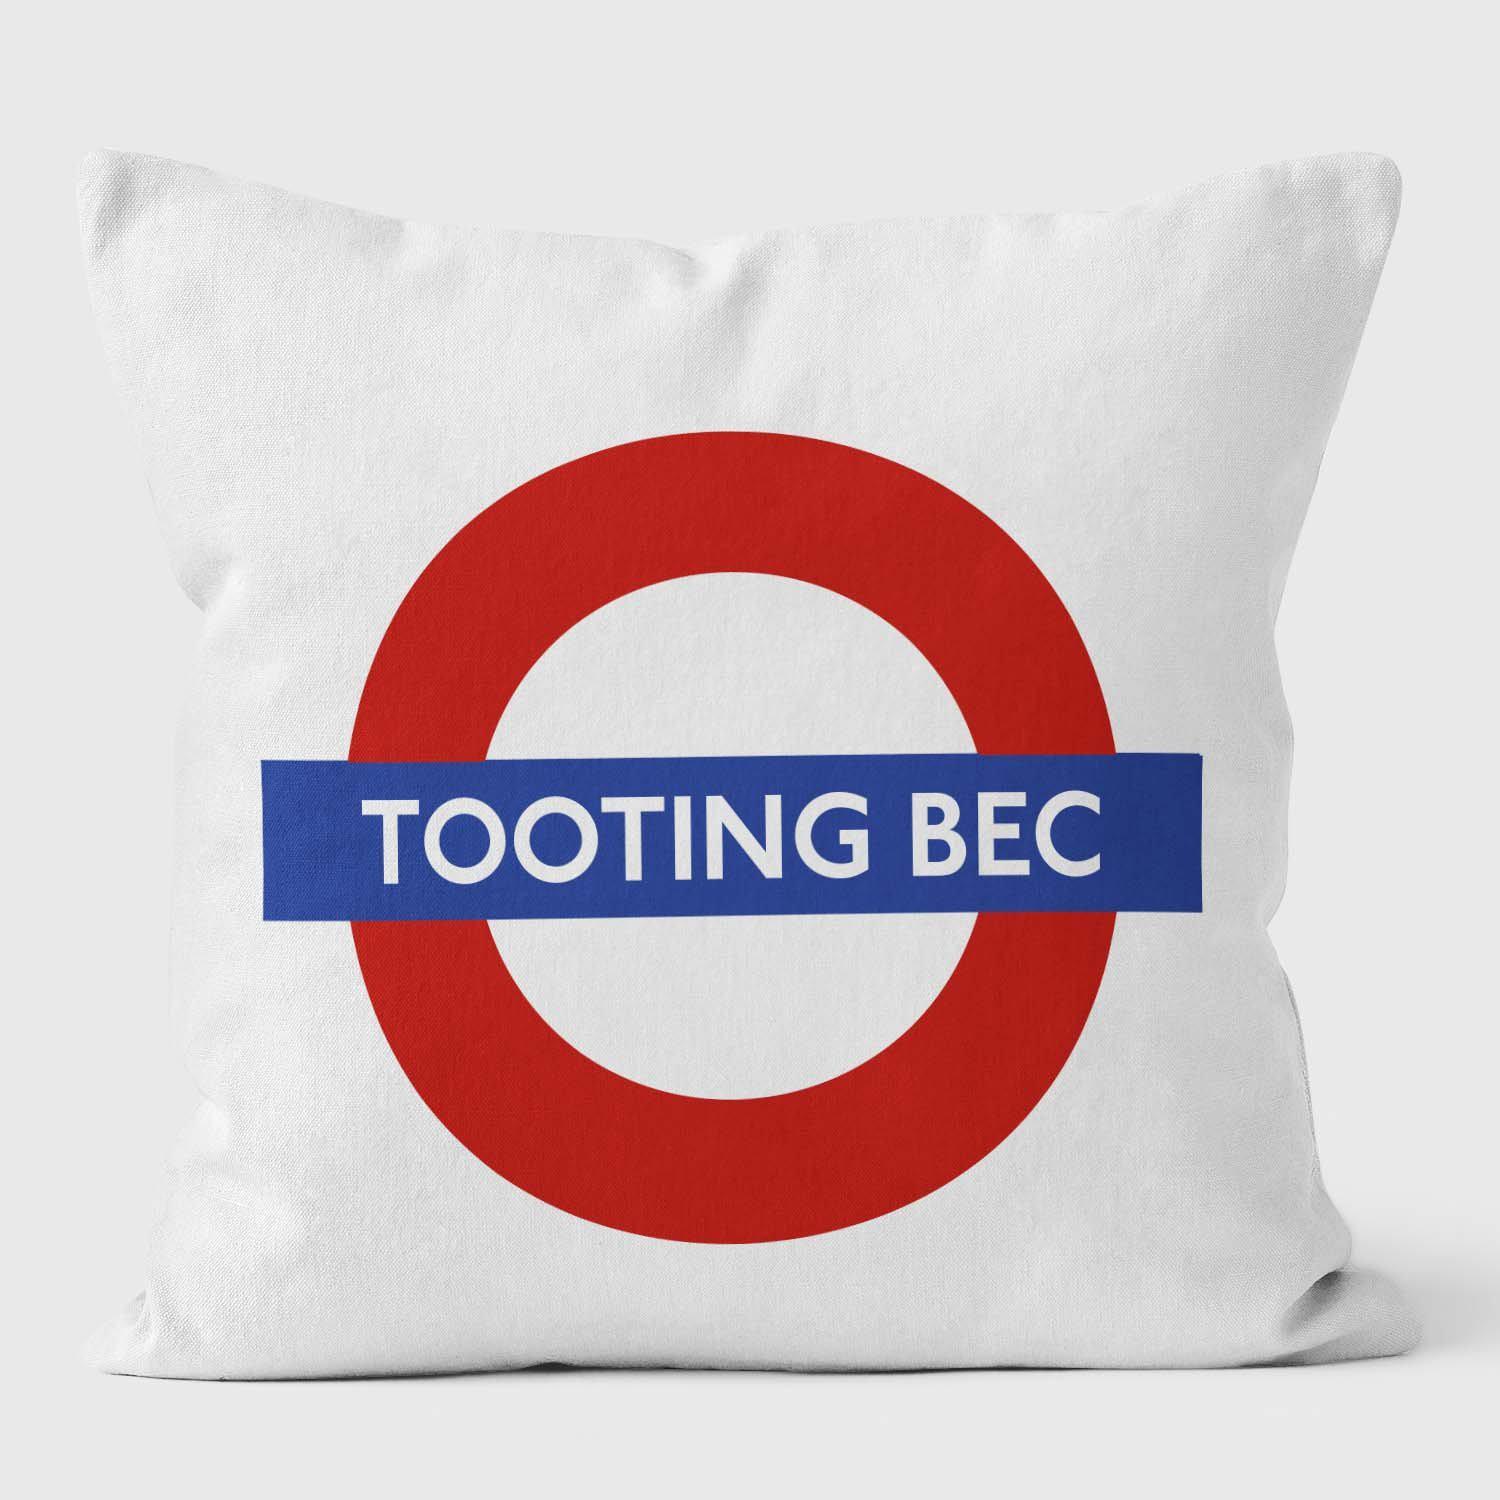 Tooting Bec London Underground Tube Station Roundel Cushion - Handmade Cushions UK - WeLoveCushions